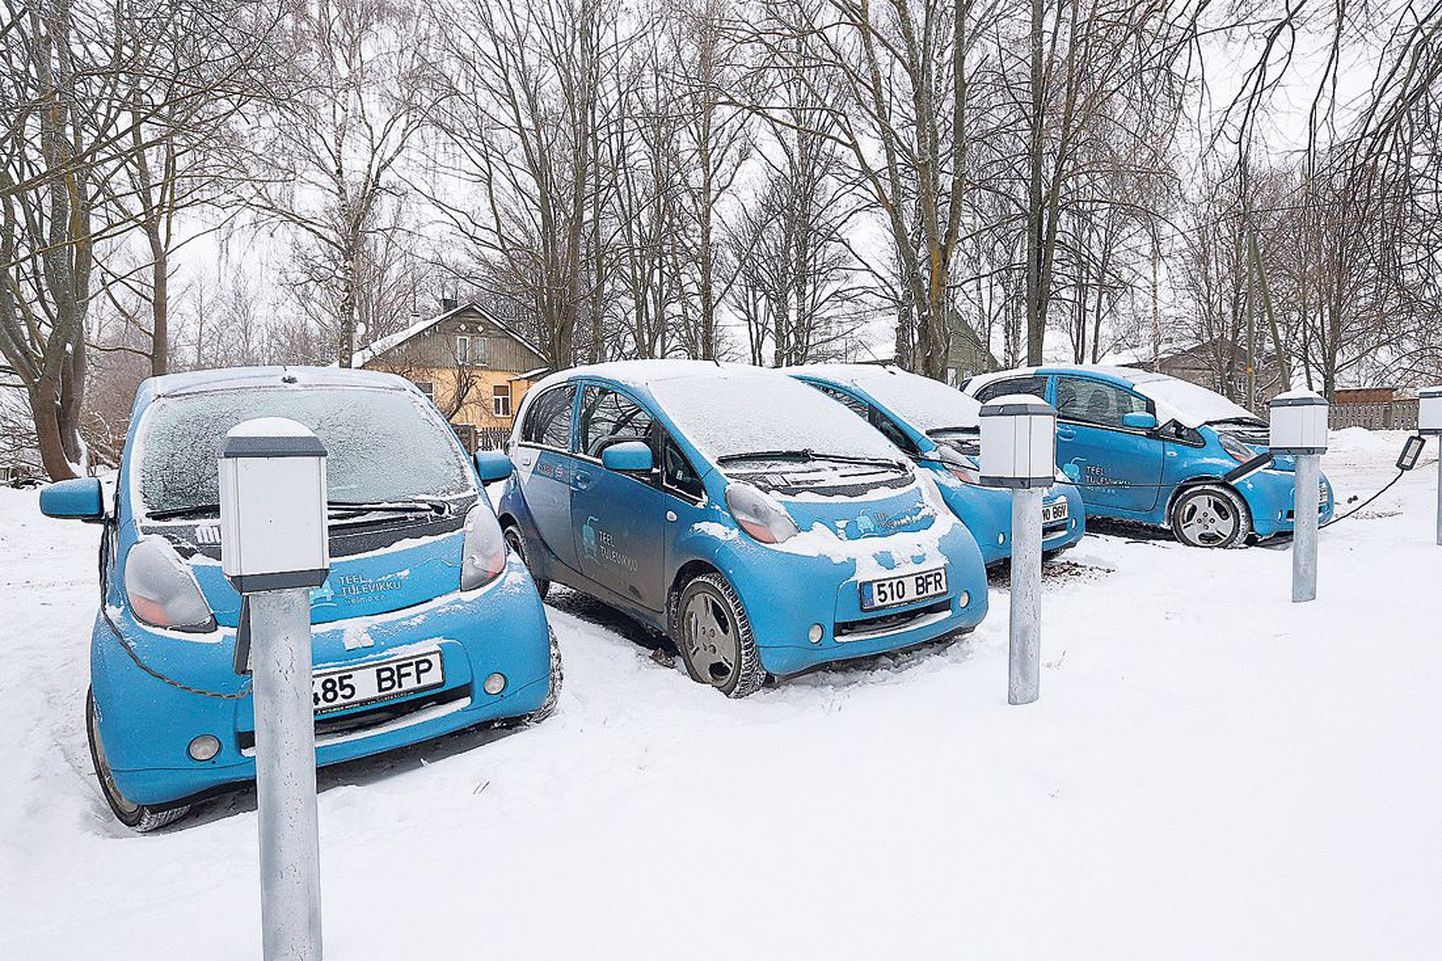 Tartu linna sotsiaal- ja tervishoiuosakond on elektriautod jaganud laiali piirkonnakeskustele. Pildil Tähtvere-Veeriku keskuse autod Vaksali tänava ääres.